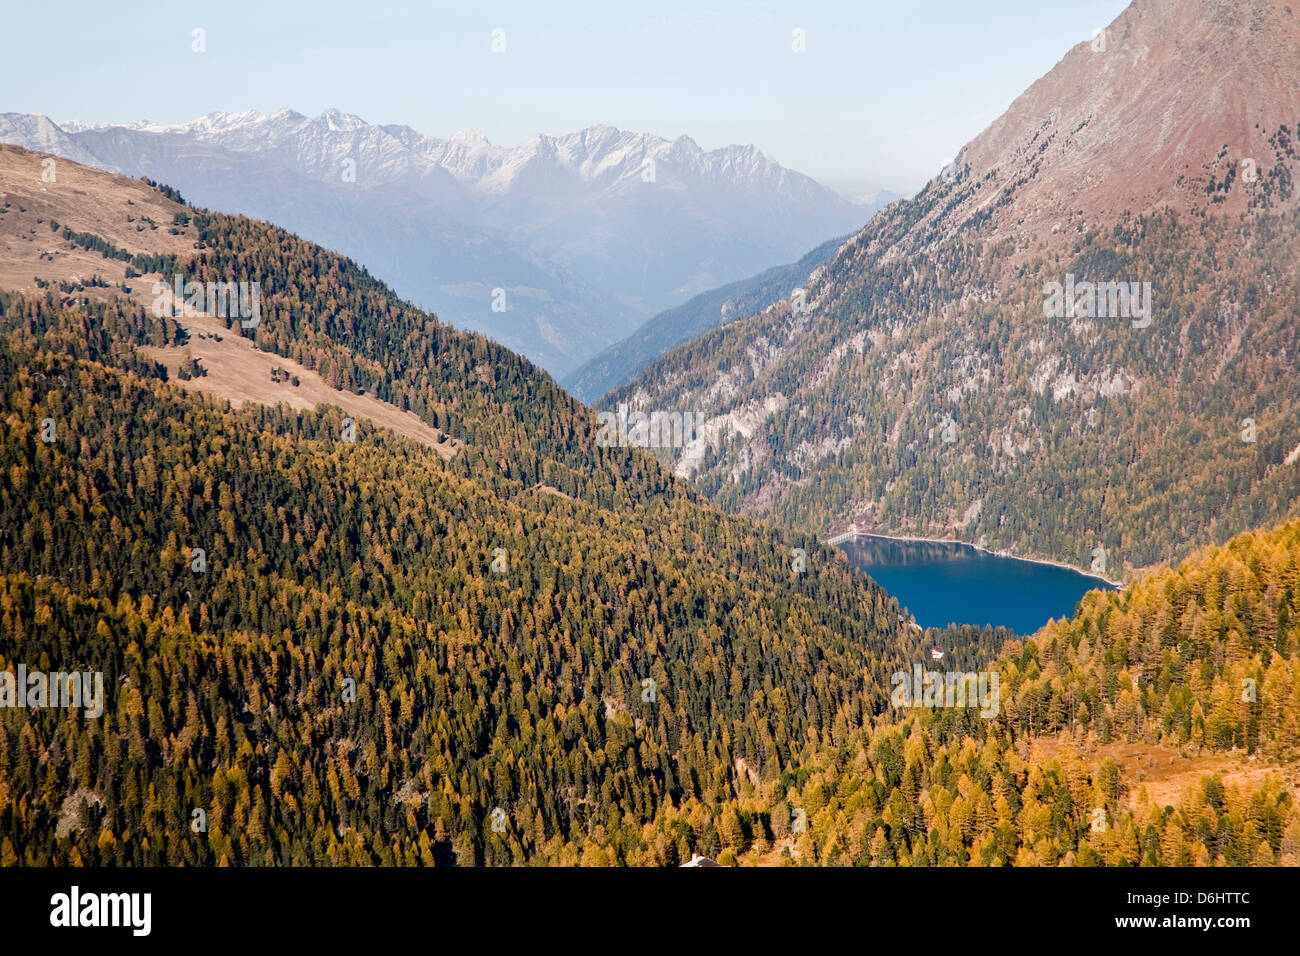 Das Tal mit See Zufrittsee in Südtirol Martelltal. Süd-Tirol, Italien. Stockfoto